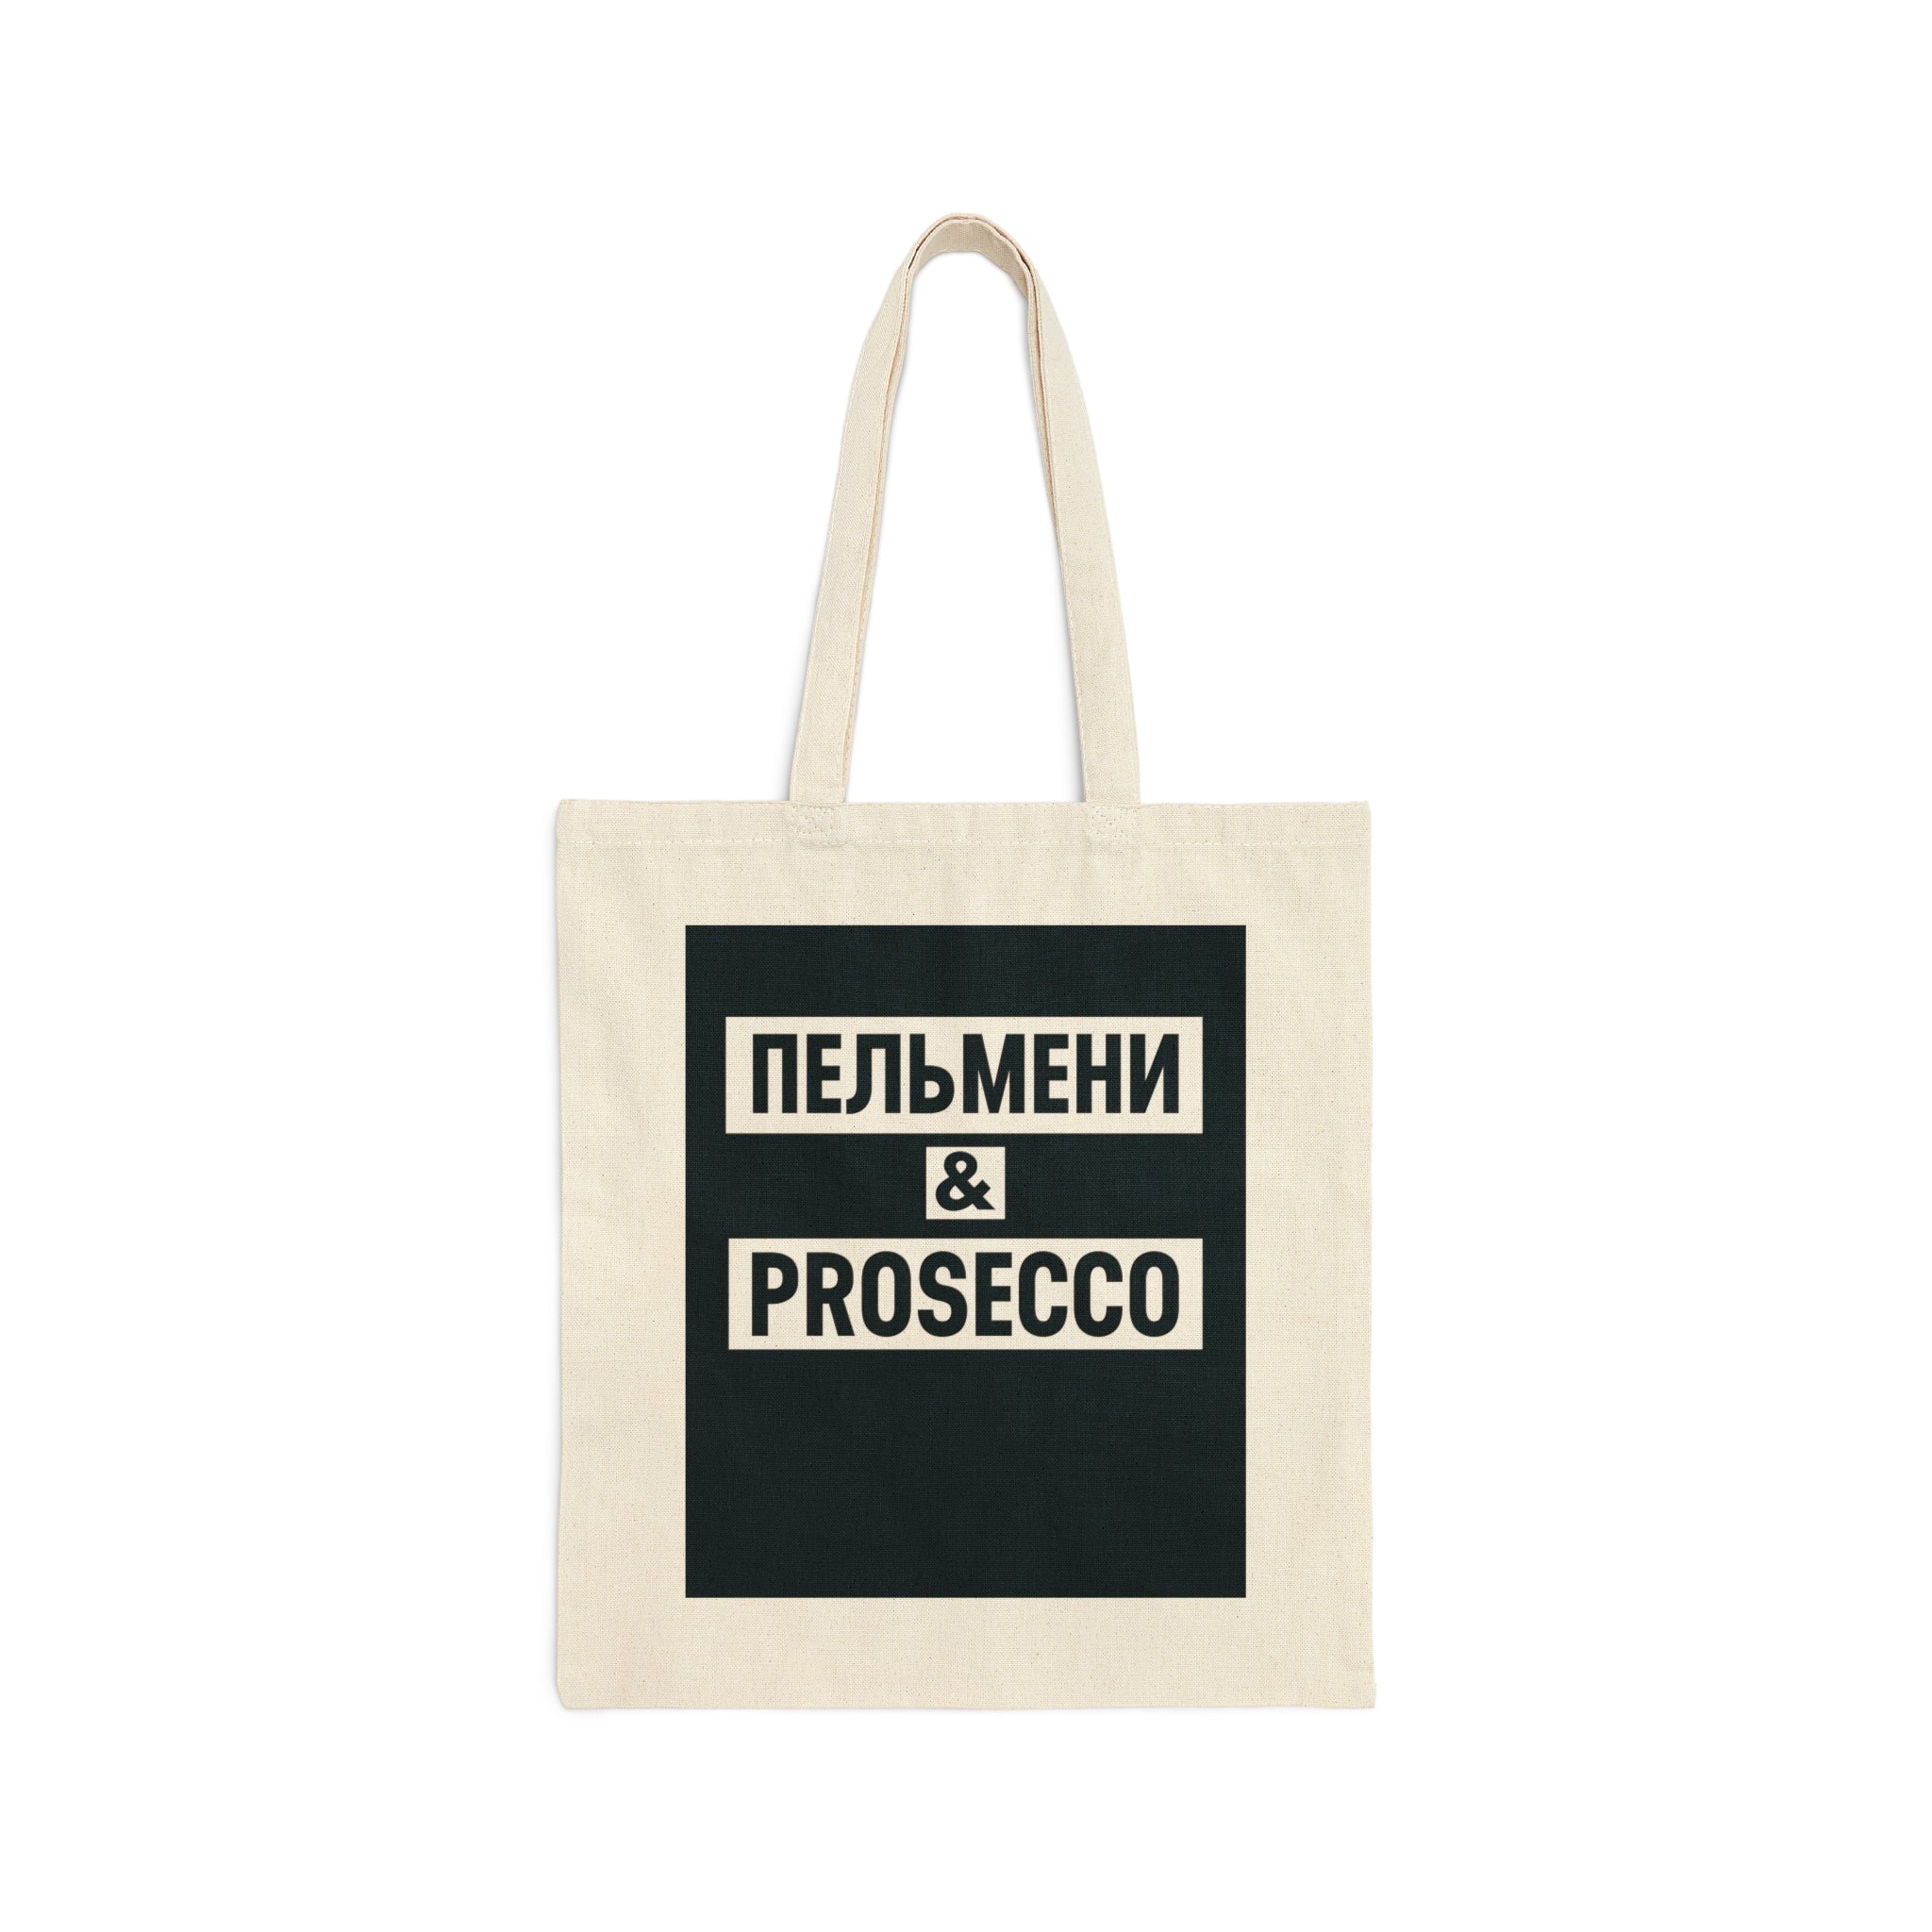 Pelmeni and Prosecco Tote Bag